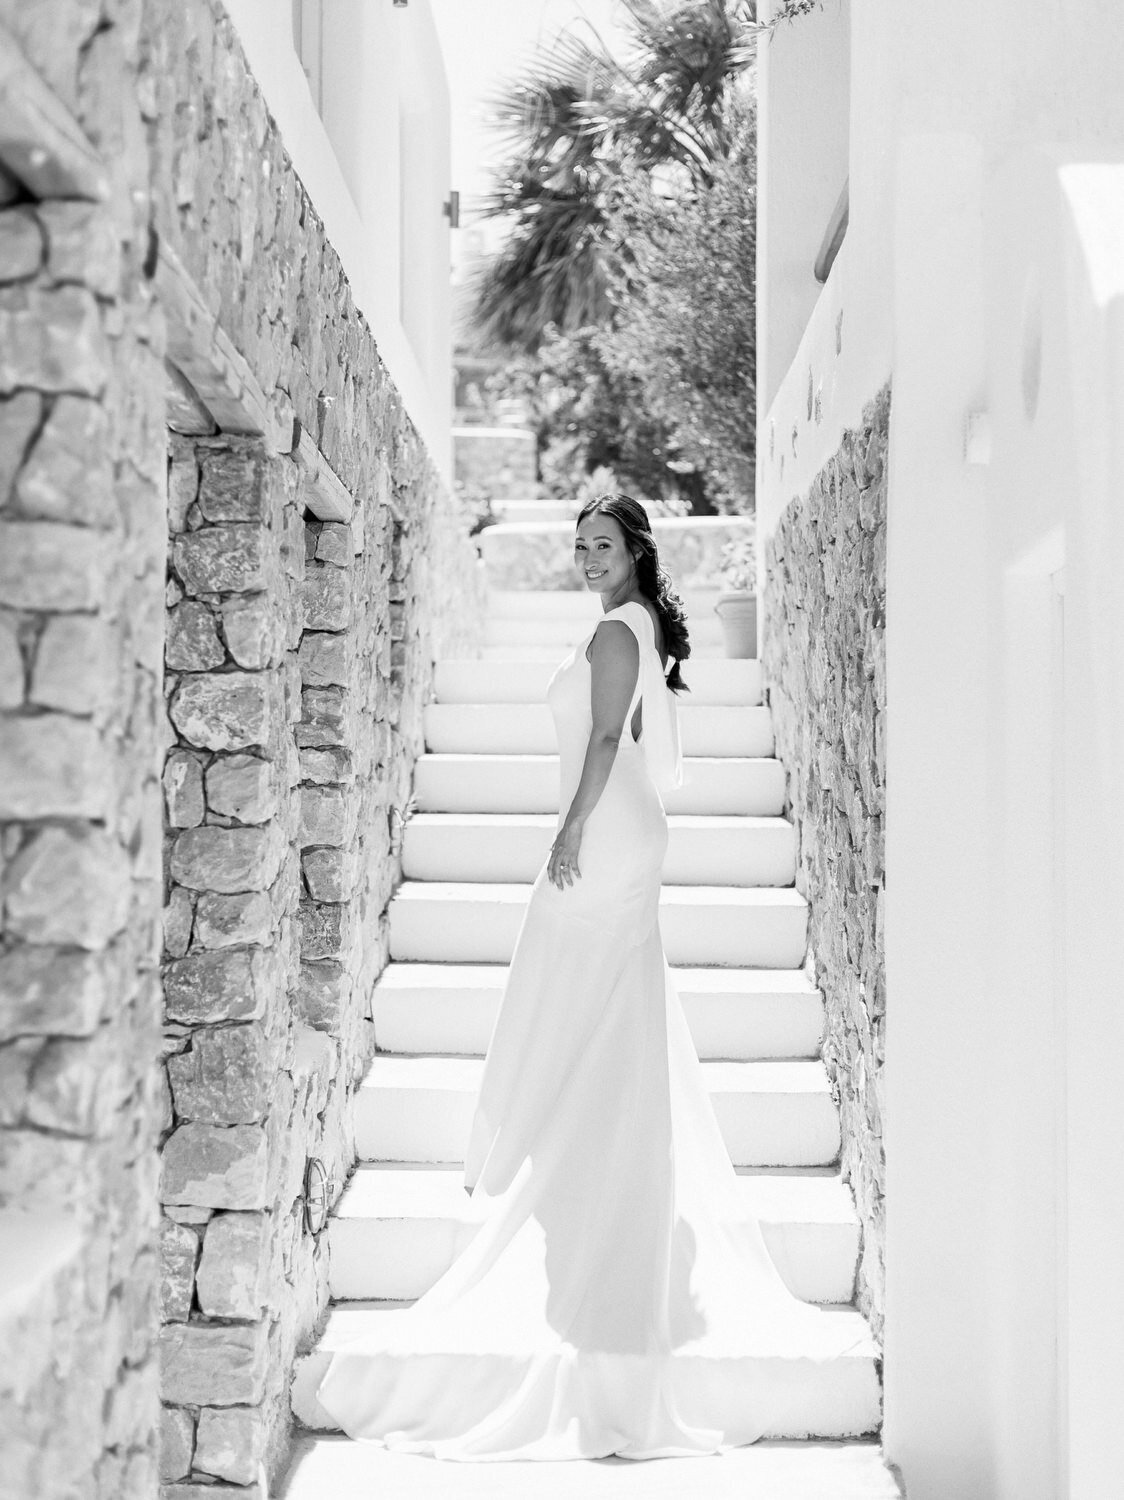 Venetsanos-Santorini-Wedding-020